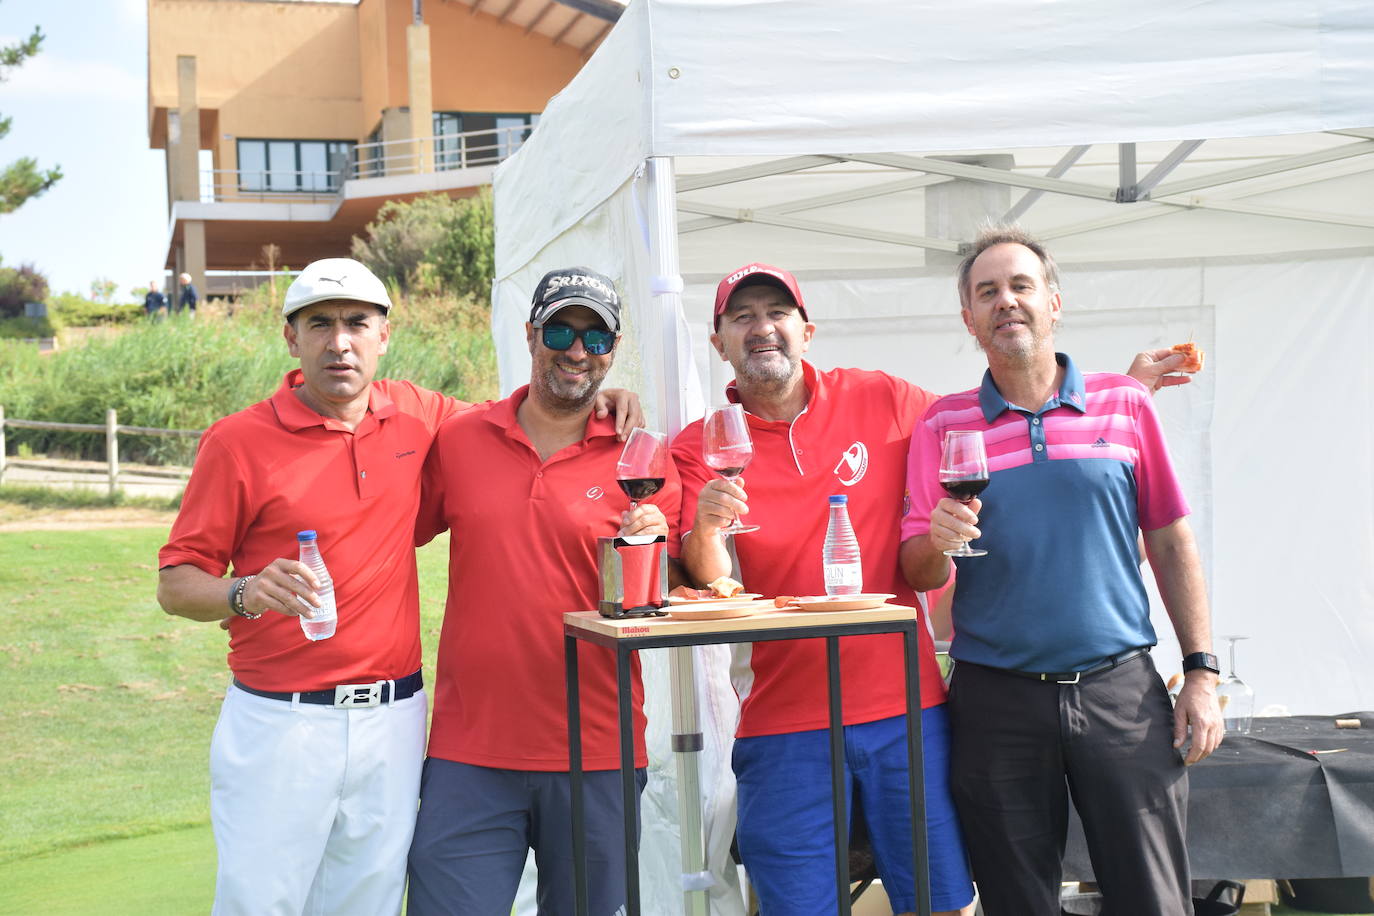 Fotos: García Faugeras y Manso ganan el torneo Ramón Bilbao